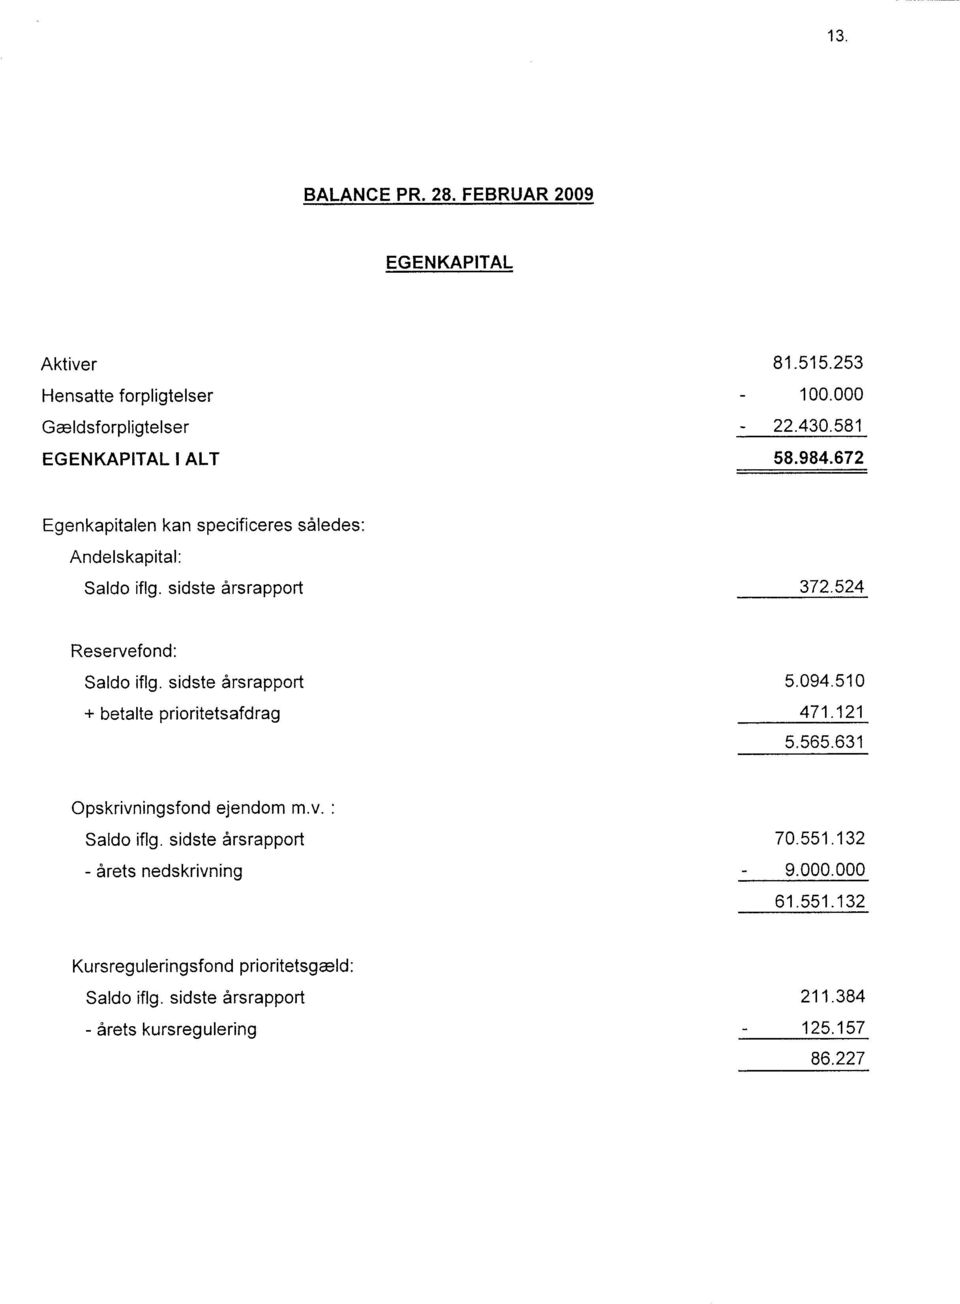 sidste irsrapport + betalte prioritetsafdrag 5.94.51 471.121 5.565.631 Opskrivningsfond ejendom m.v. Saldo iflg.